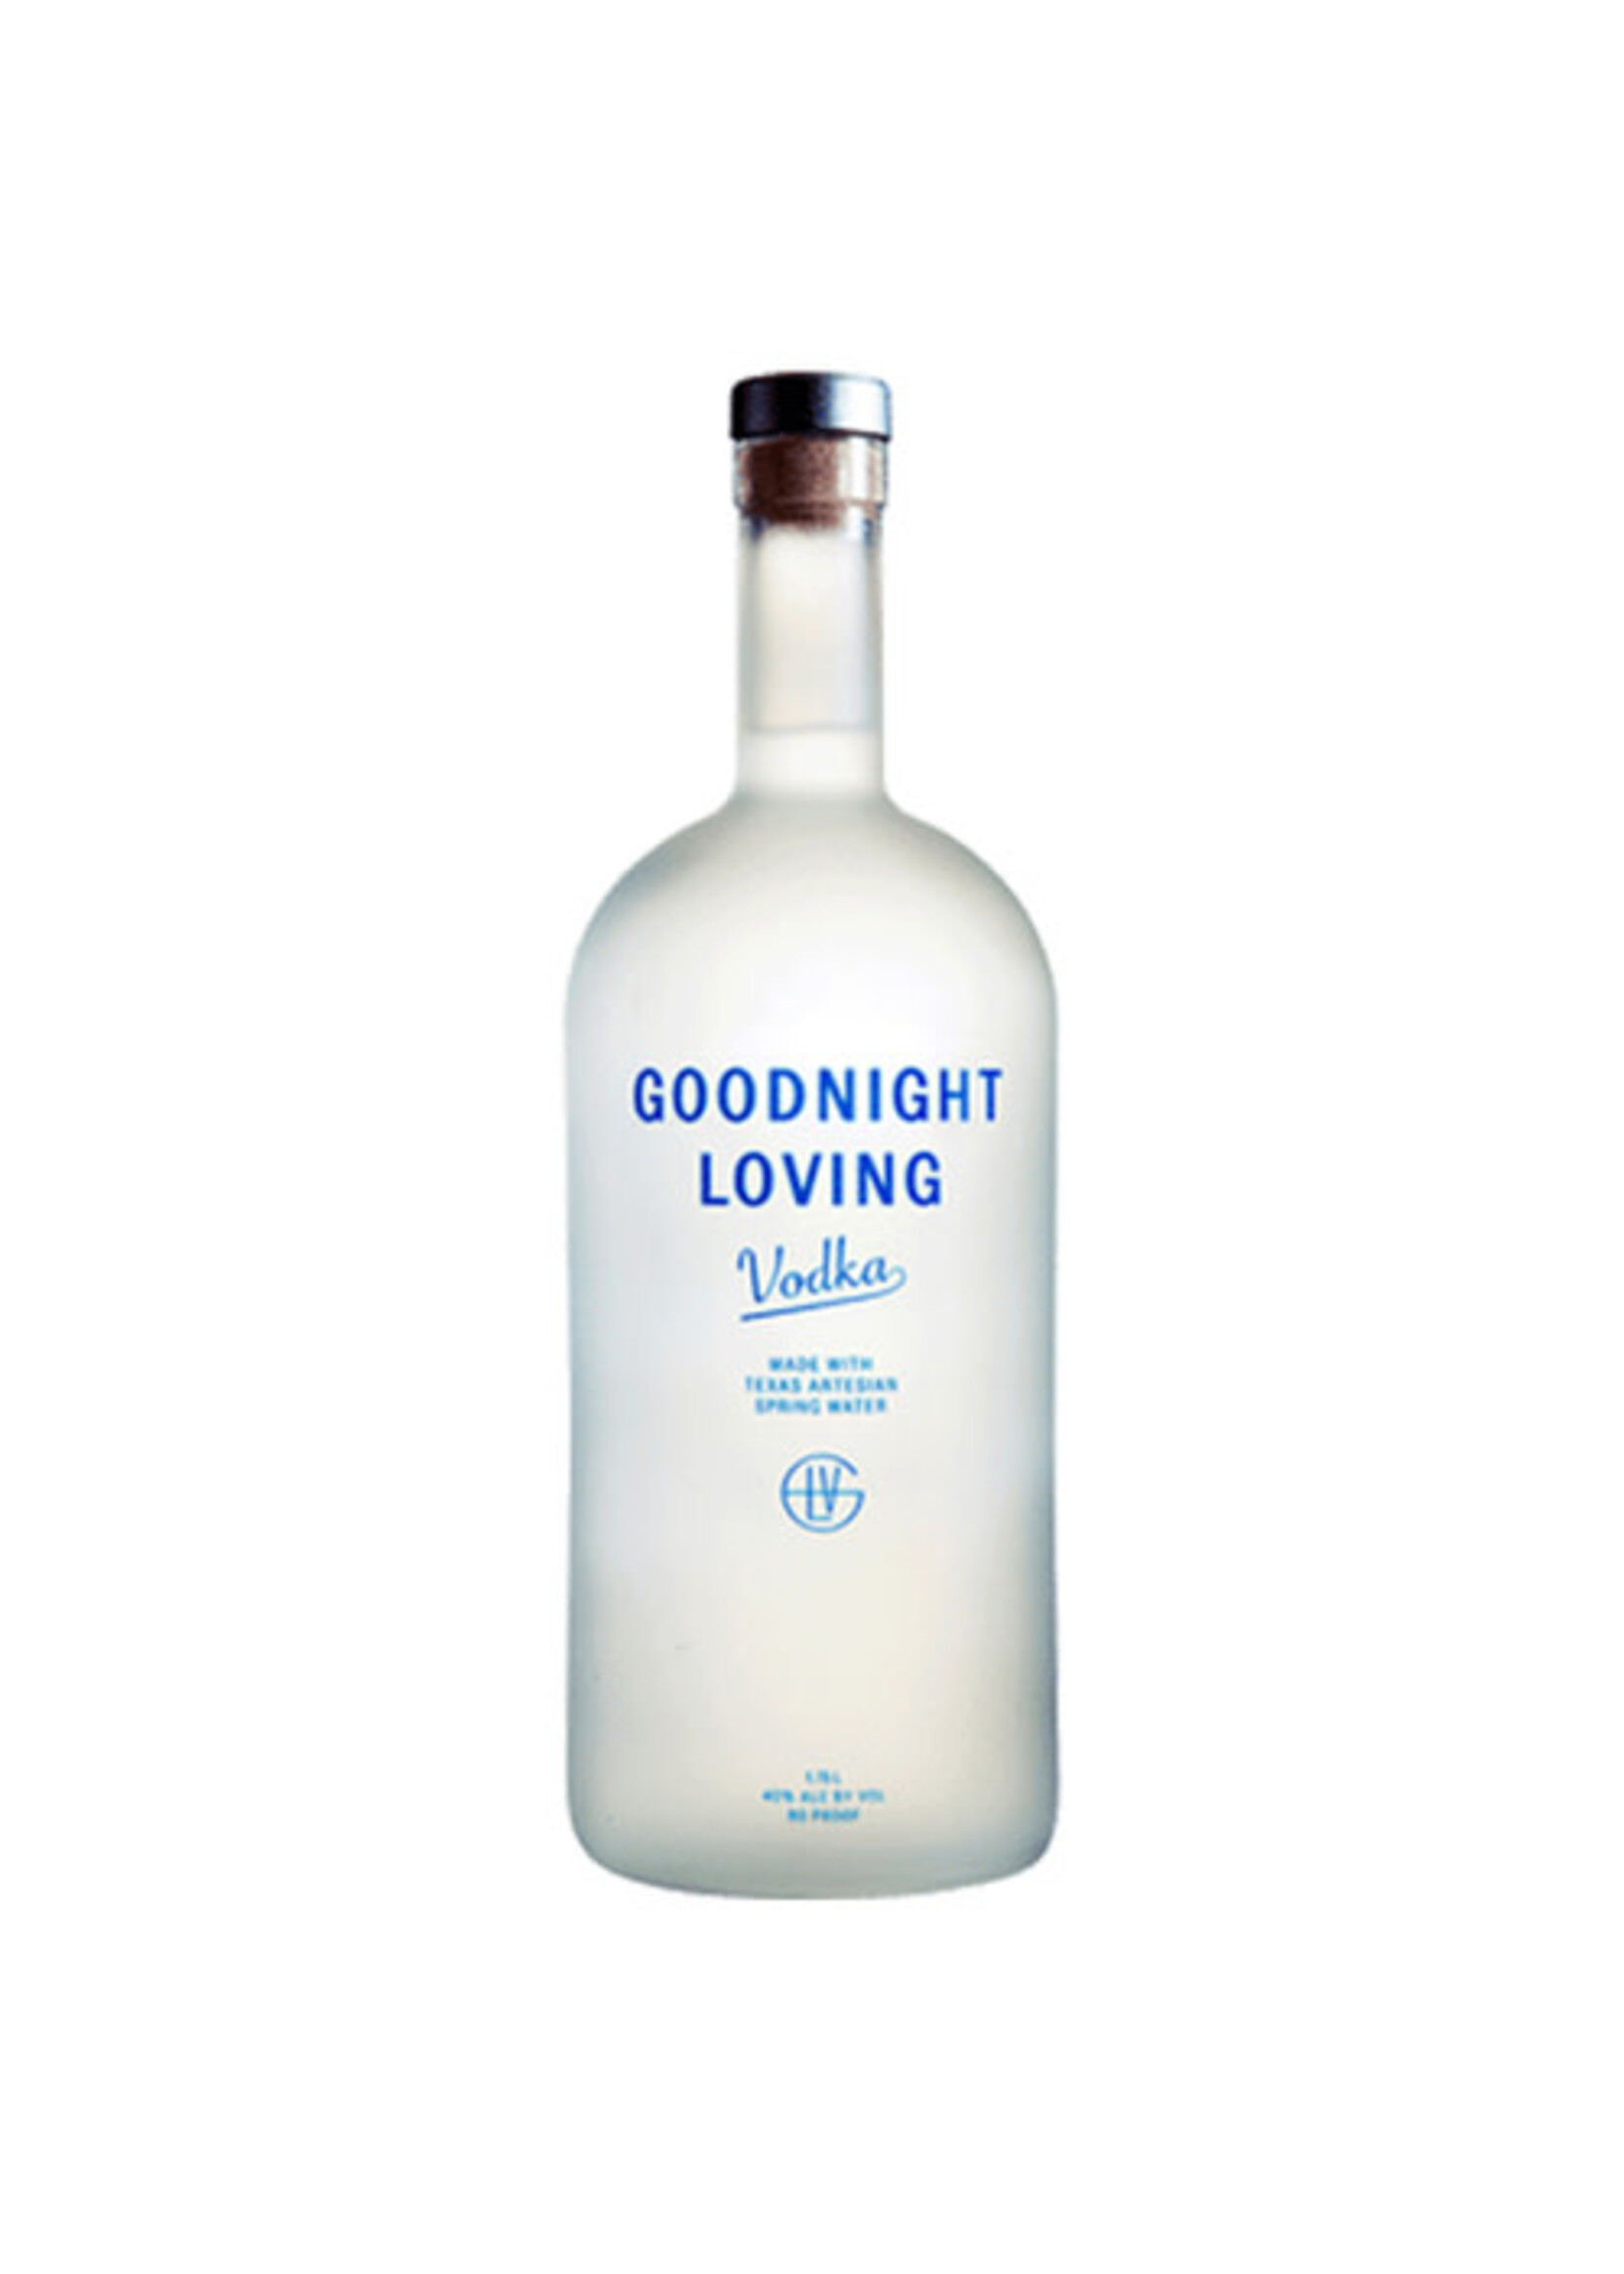 Goodnight Loving Vodka 80Proof 1.75 Ltr